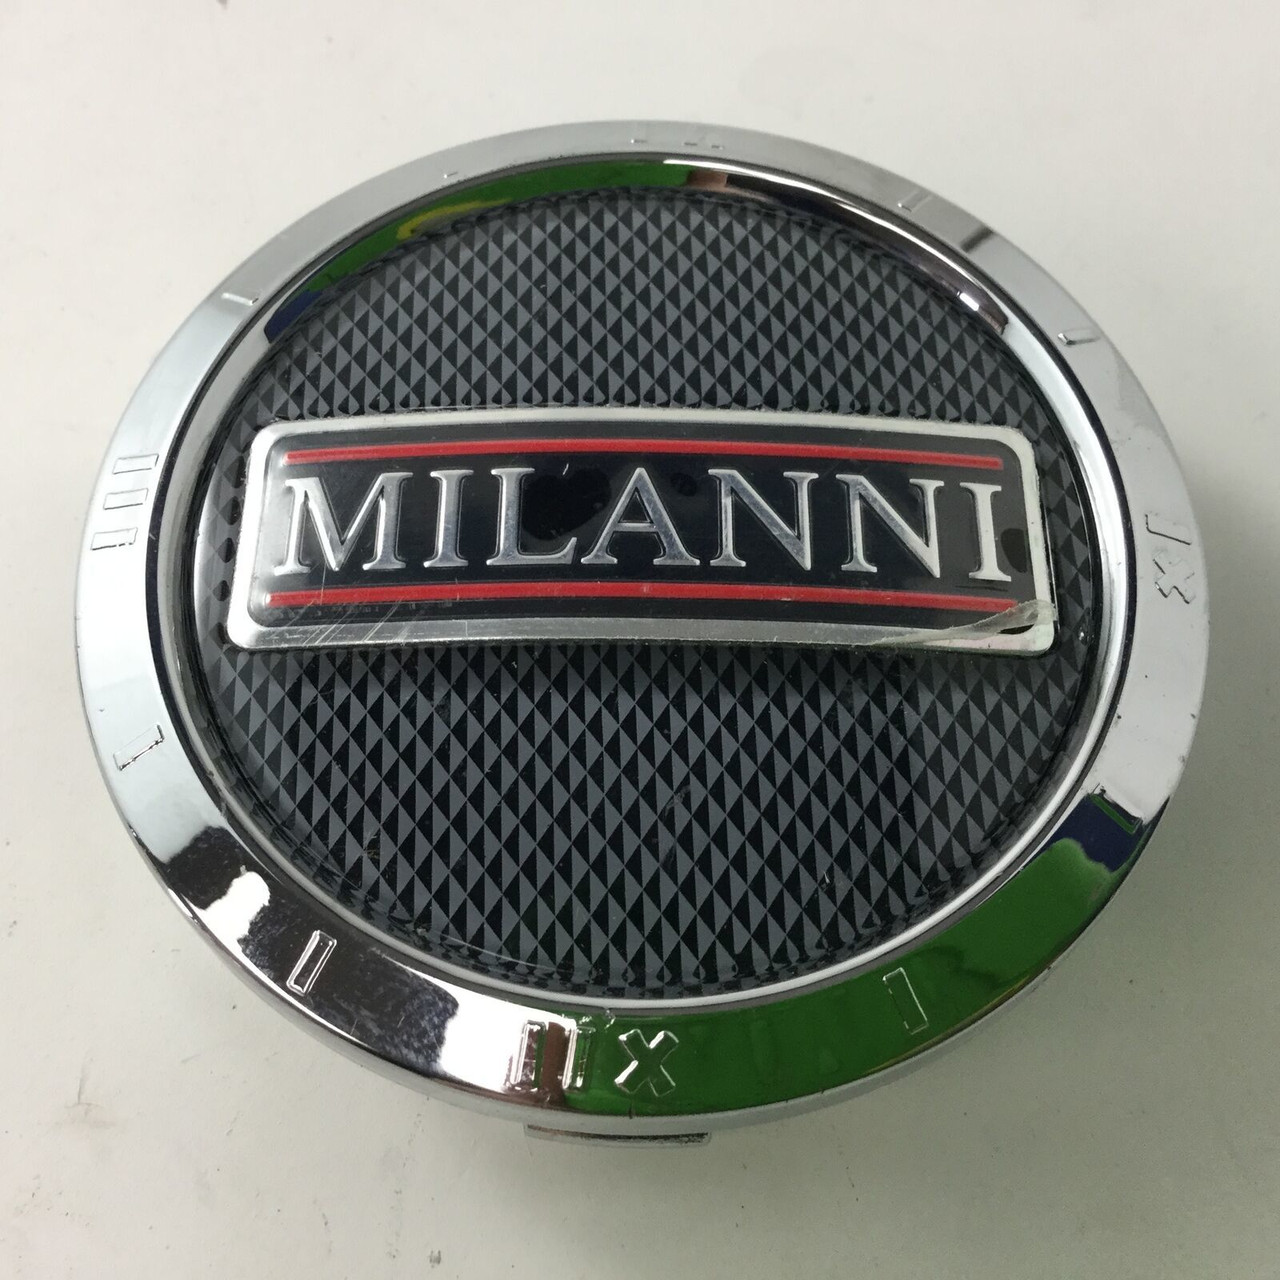 Milanni Snap In Wheel Center Hub Cap Chrome C9012 C-229-1 75mm Diameter MIL60